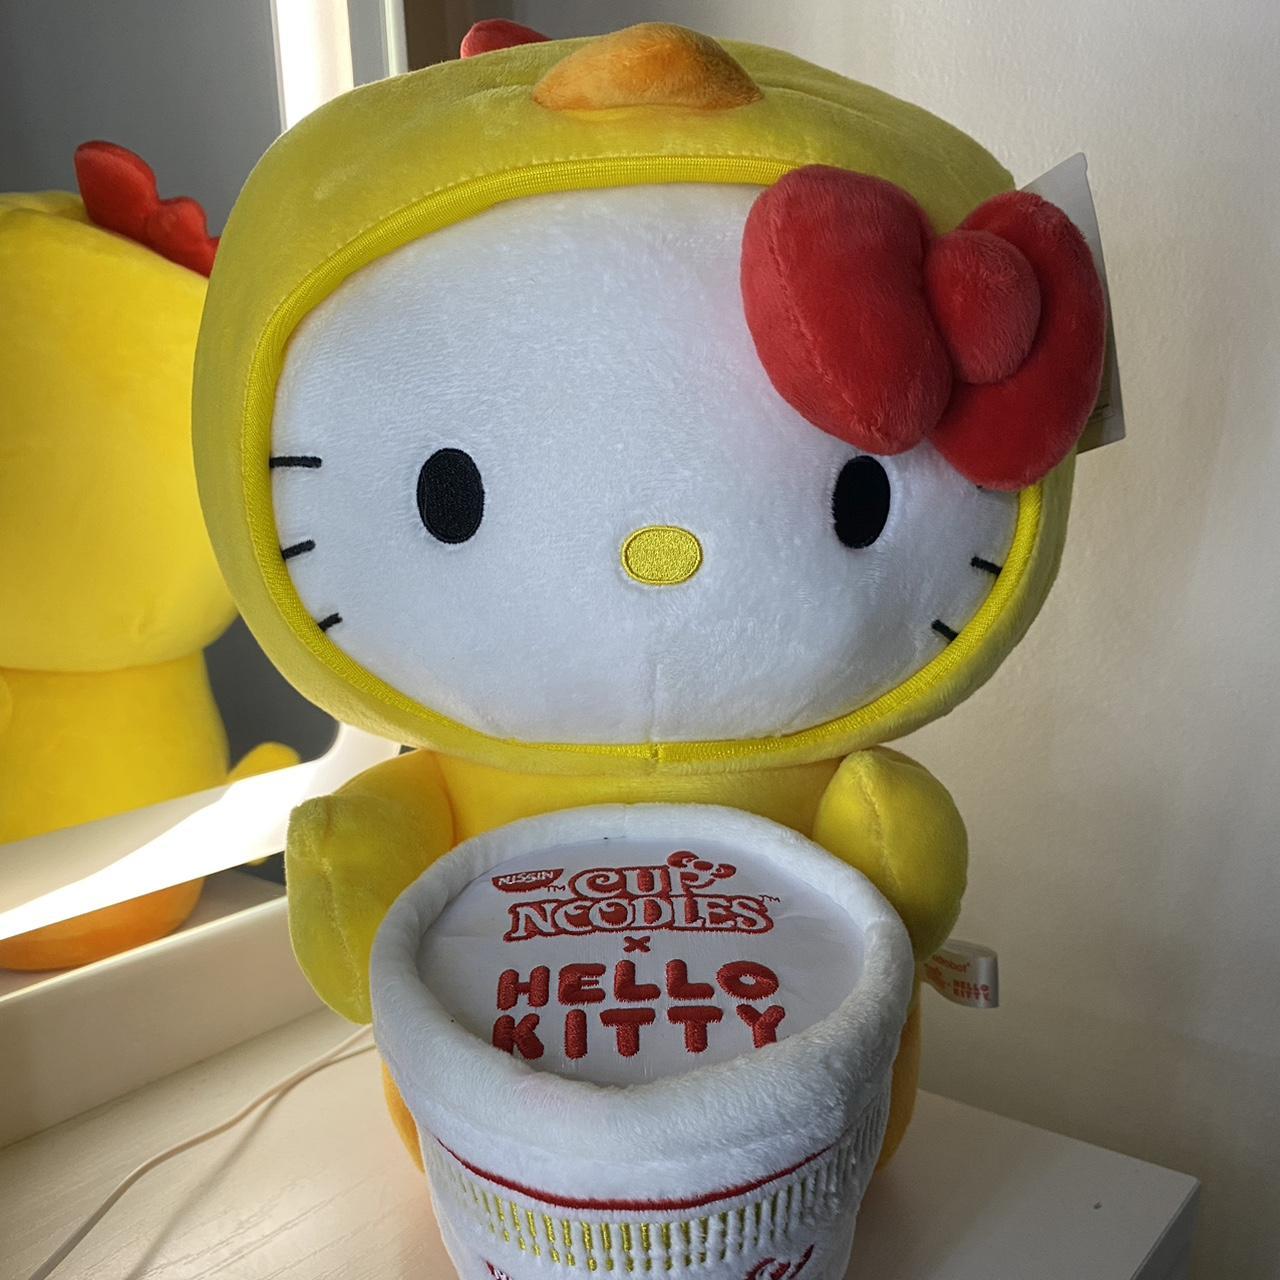 Hello Kitty (@hellokitty) / X